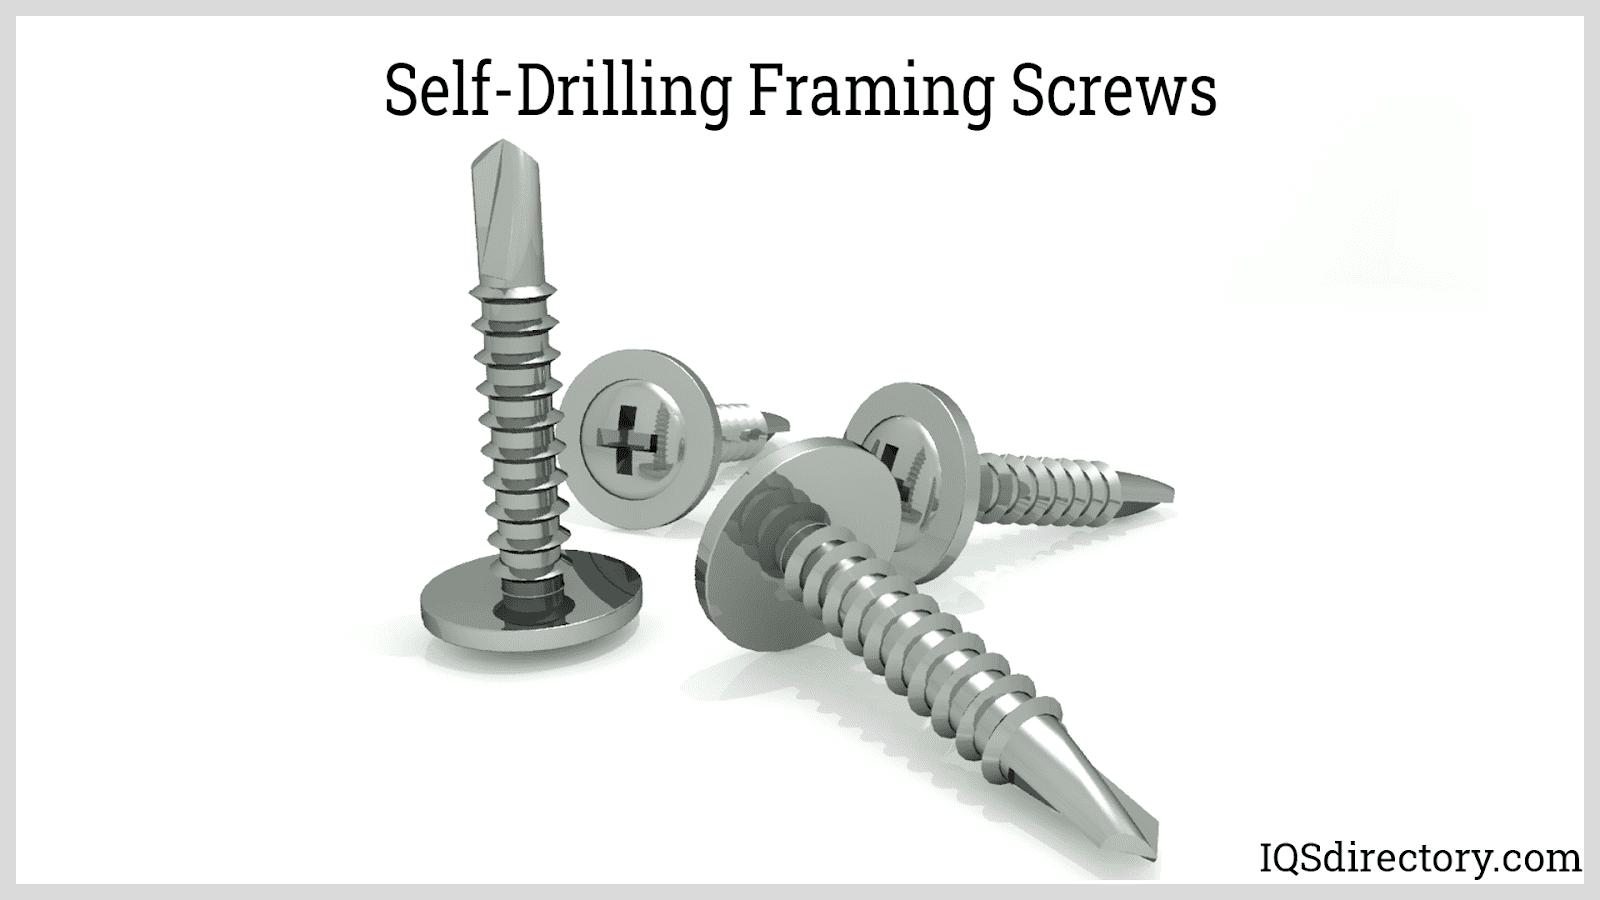 Self-Drilling Framing Screws